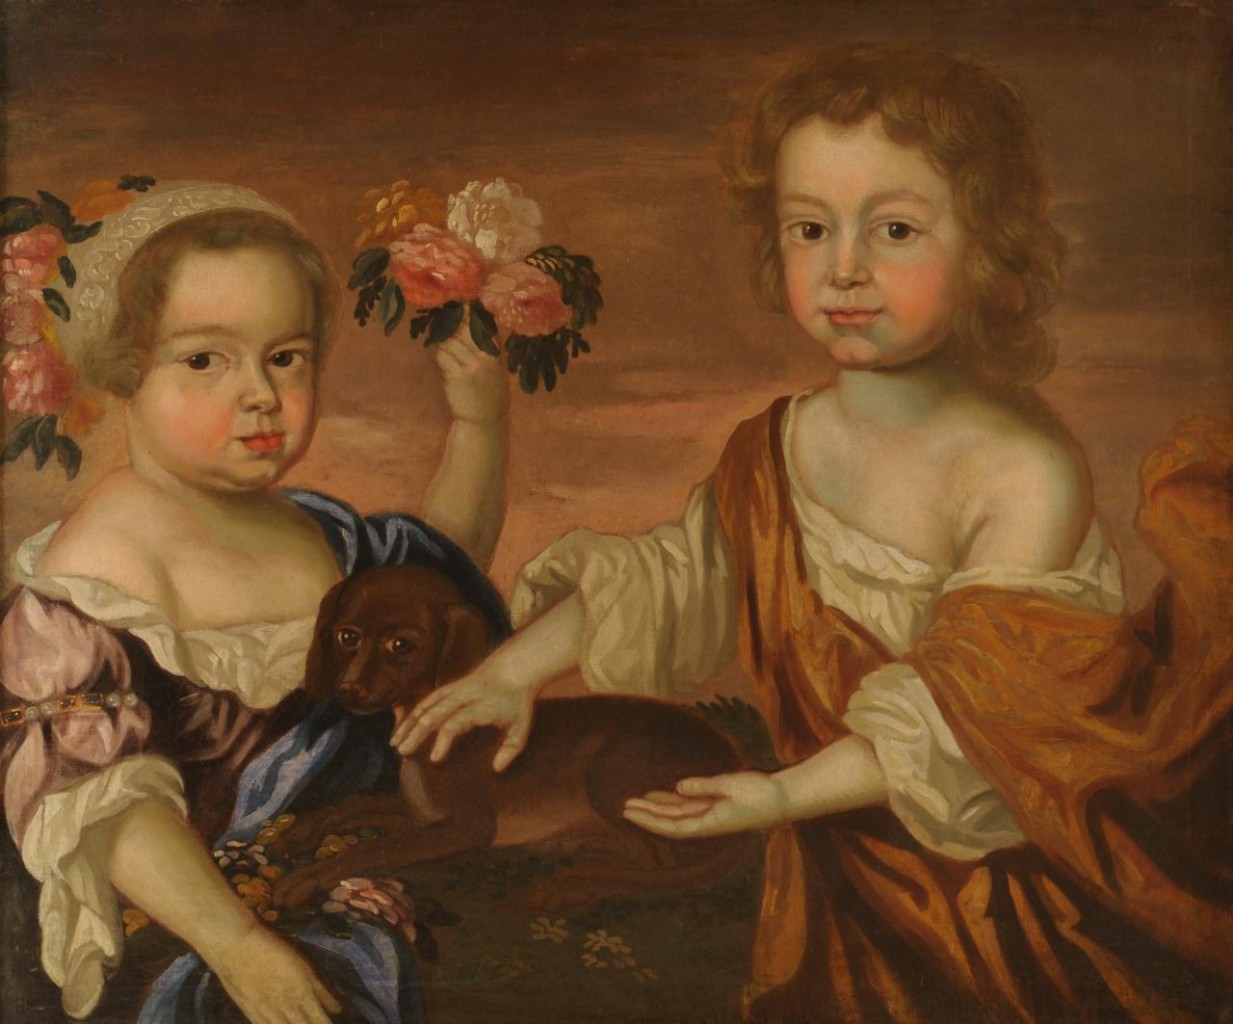 Lot 199: Portrait of Two Children, manner of John Smibert